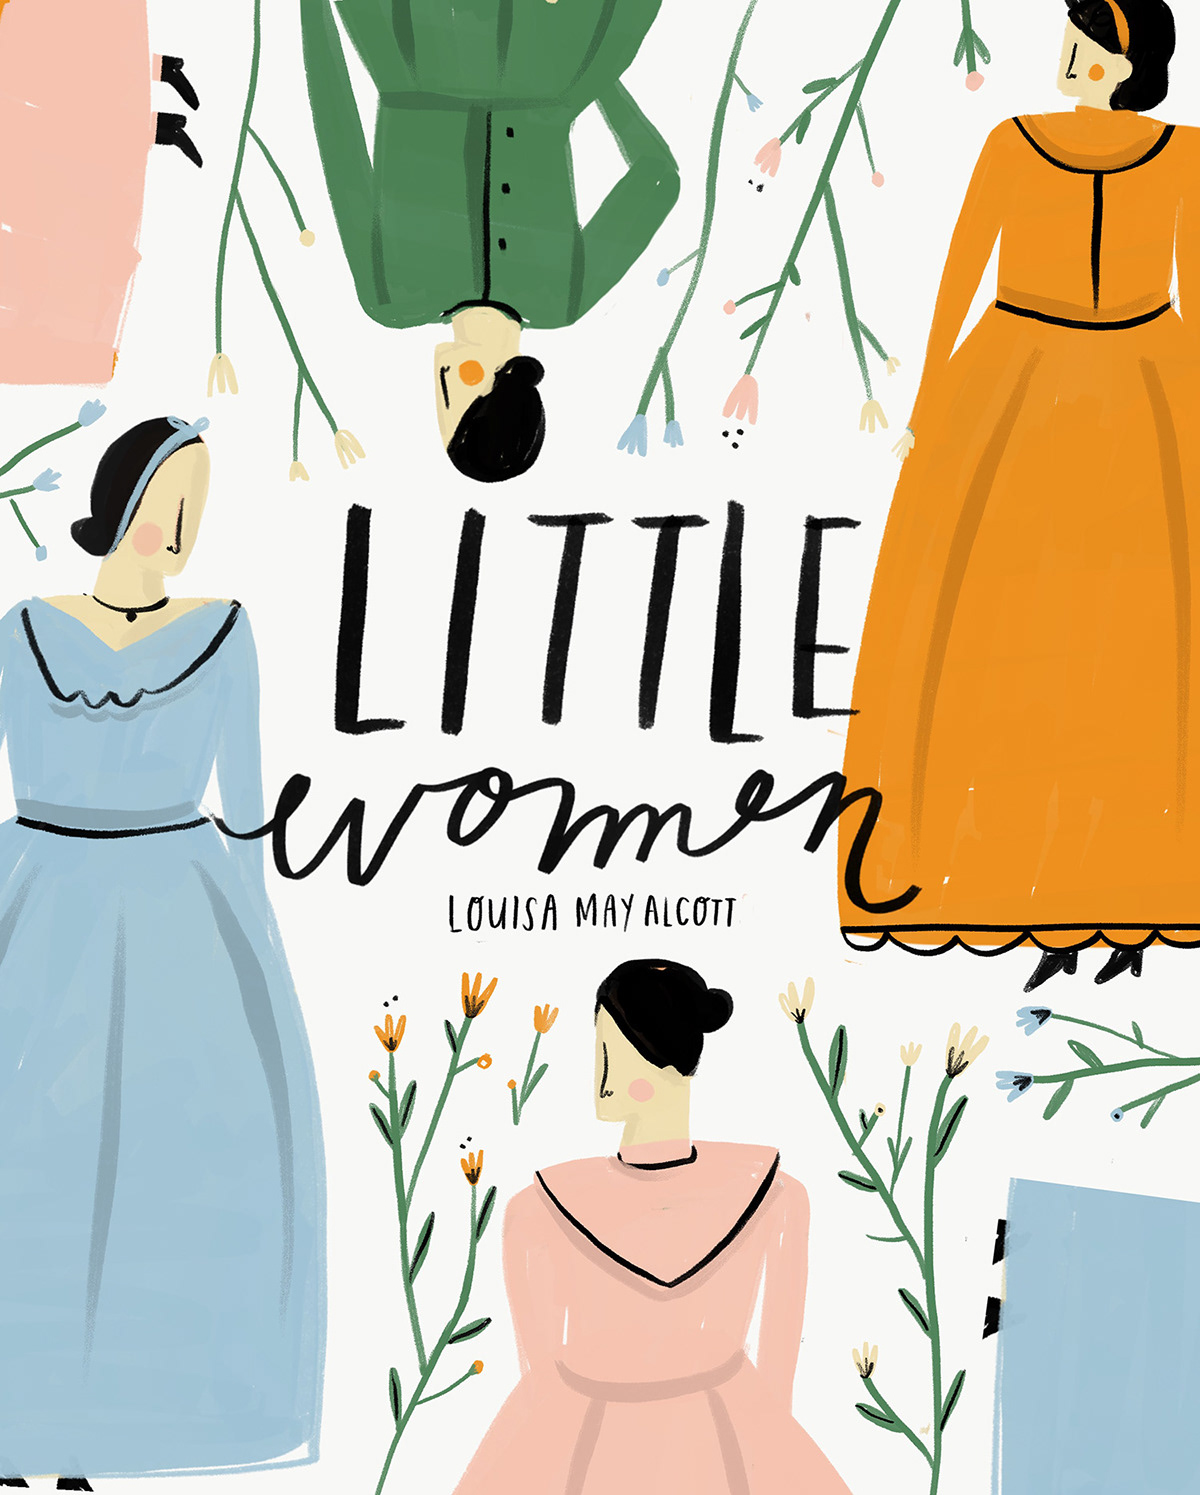 Little women book cover

